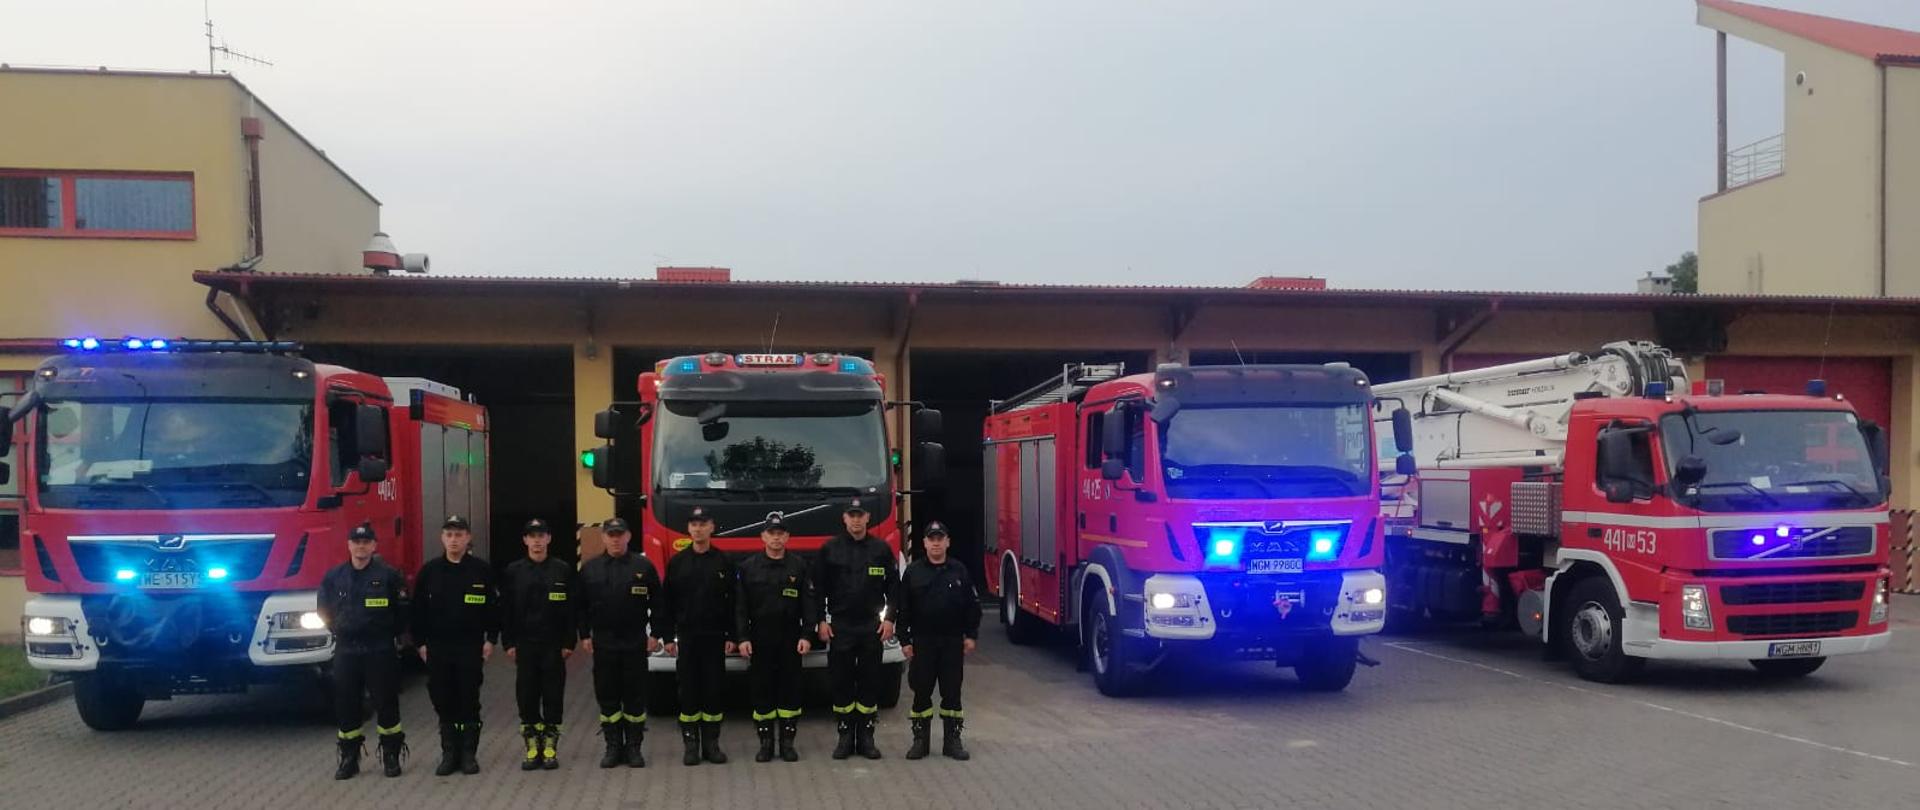 8 strażaków w ubraniach koszarowych stoi przed garażami za nimi stoją samochody ratowniczo-gaśnicze i specjalne z włączonymi sygnałami świetlnymi i dźwiękowymi w celu uczczenia pamięci tragicznie zmarłego strażaka OSP.